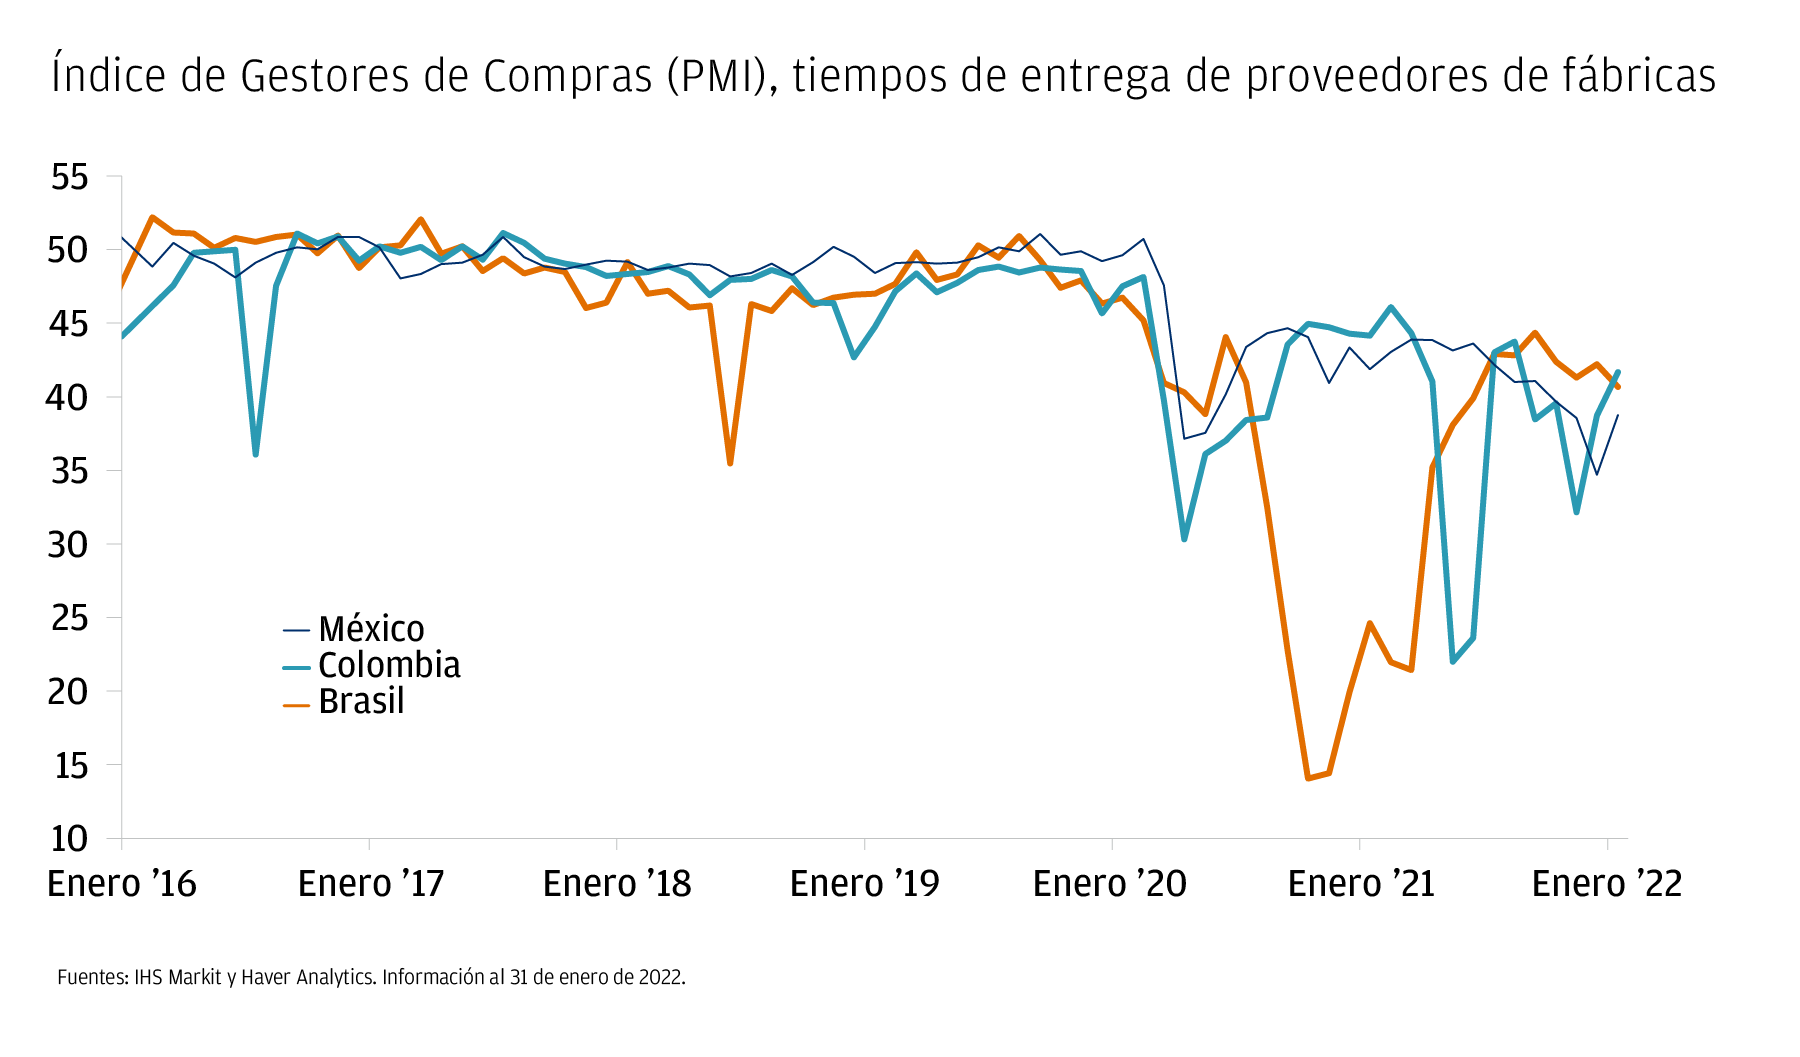 El gráfico muestra el índice de gestores de compra, medido por los tiempos de entrega de los proveedores de fábricas,para tres países de América Latina: México, Colombia y Brasil, entre enero de 2016 y enero de 2022.